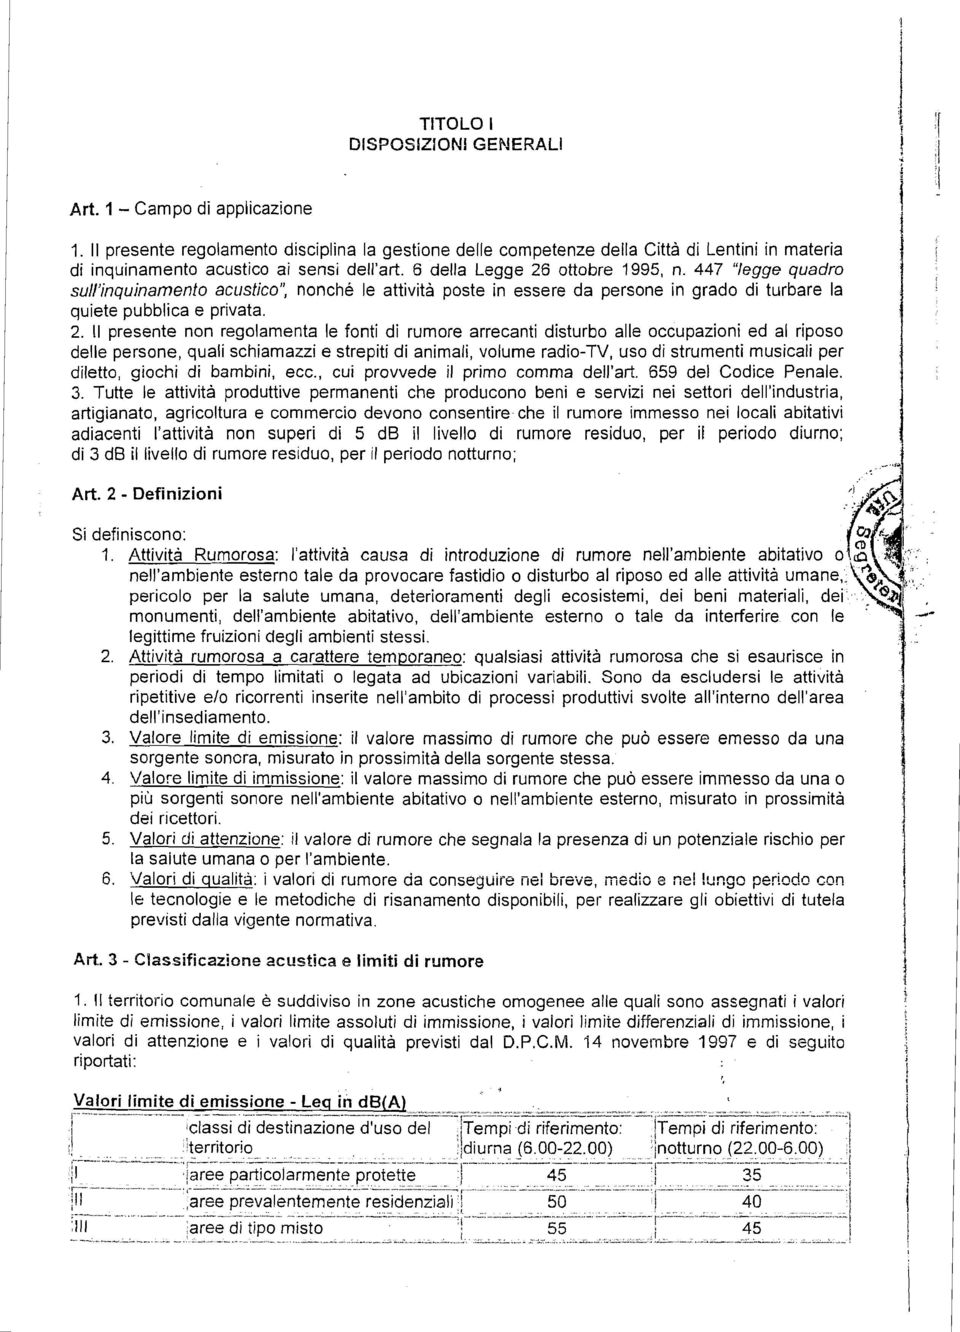 ottobre 1995, n. 447 "legge quadro sull'nqunamento acustco", nonché le attvtà poste n essere da persone n grado d turbare la quete pubblca e prvata. 2.